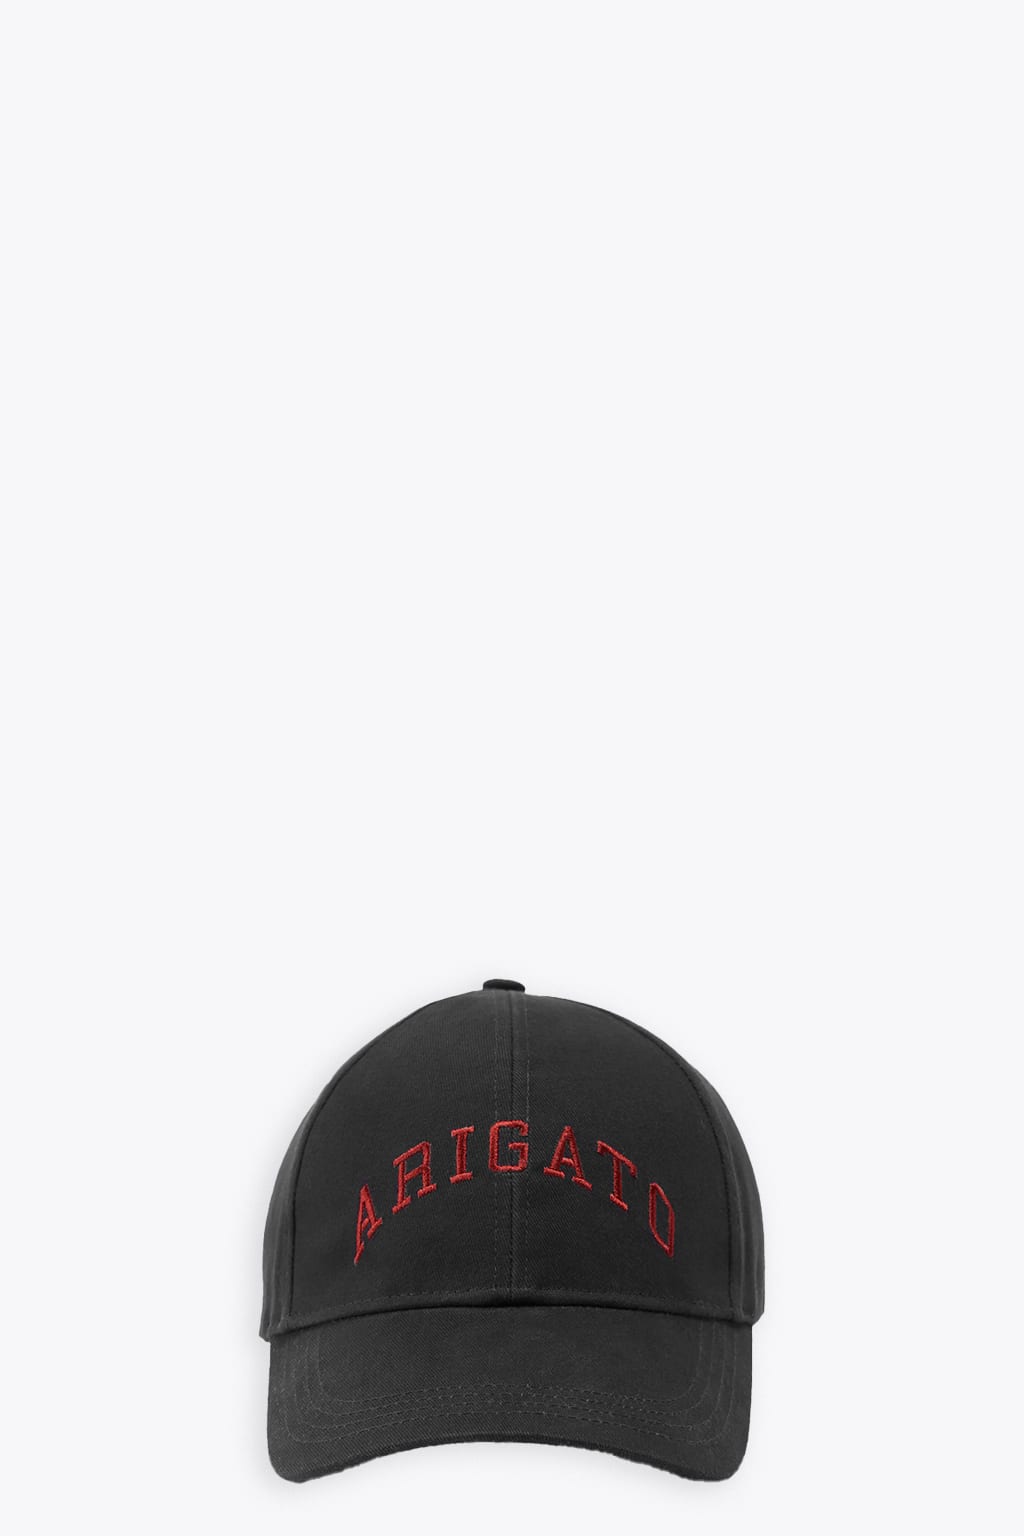 College Arigato Cap Black cap with red logo embroidery - College Arigato cap